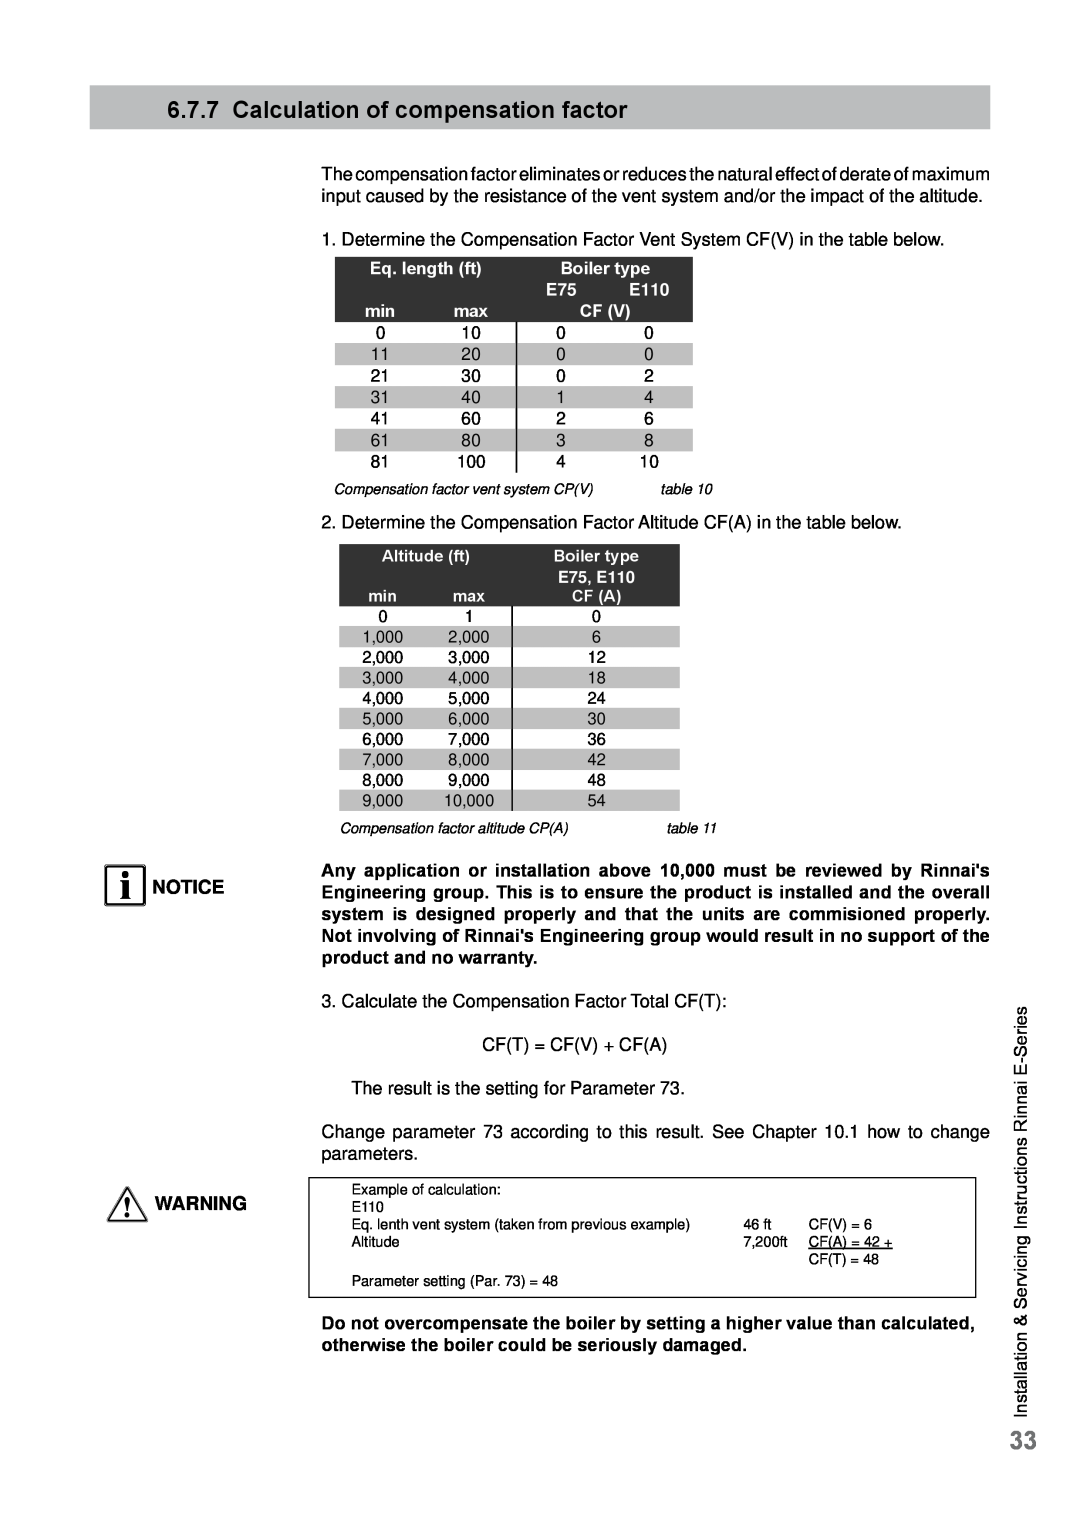 Rinnai E75CN, E110CP, E110CN, E75CP Calculation of compensation factor, Notice, Eq. length ft, Boiler type E75 E110 CF 